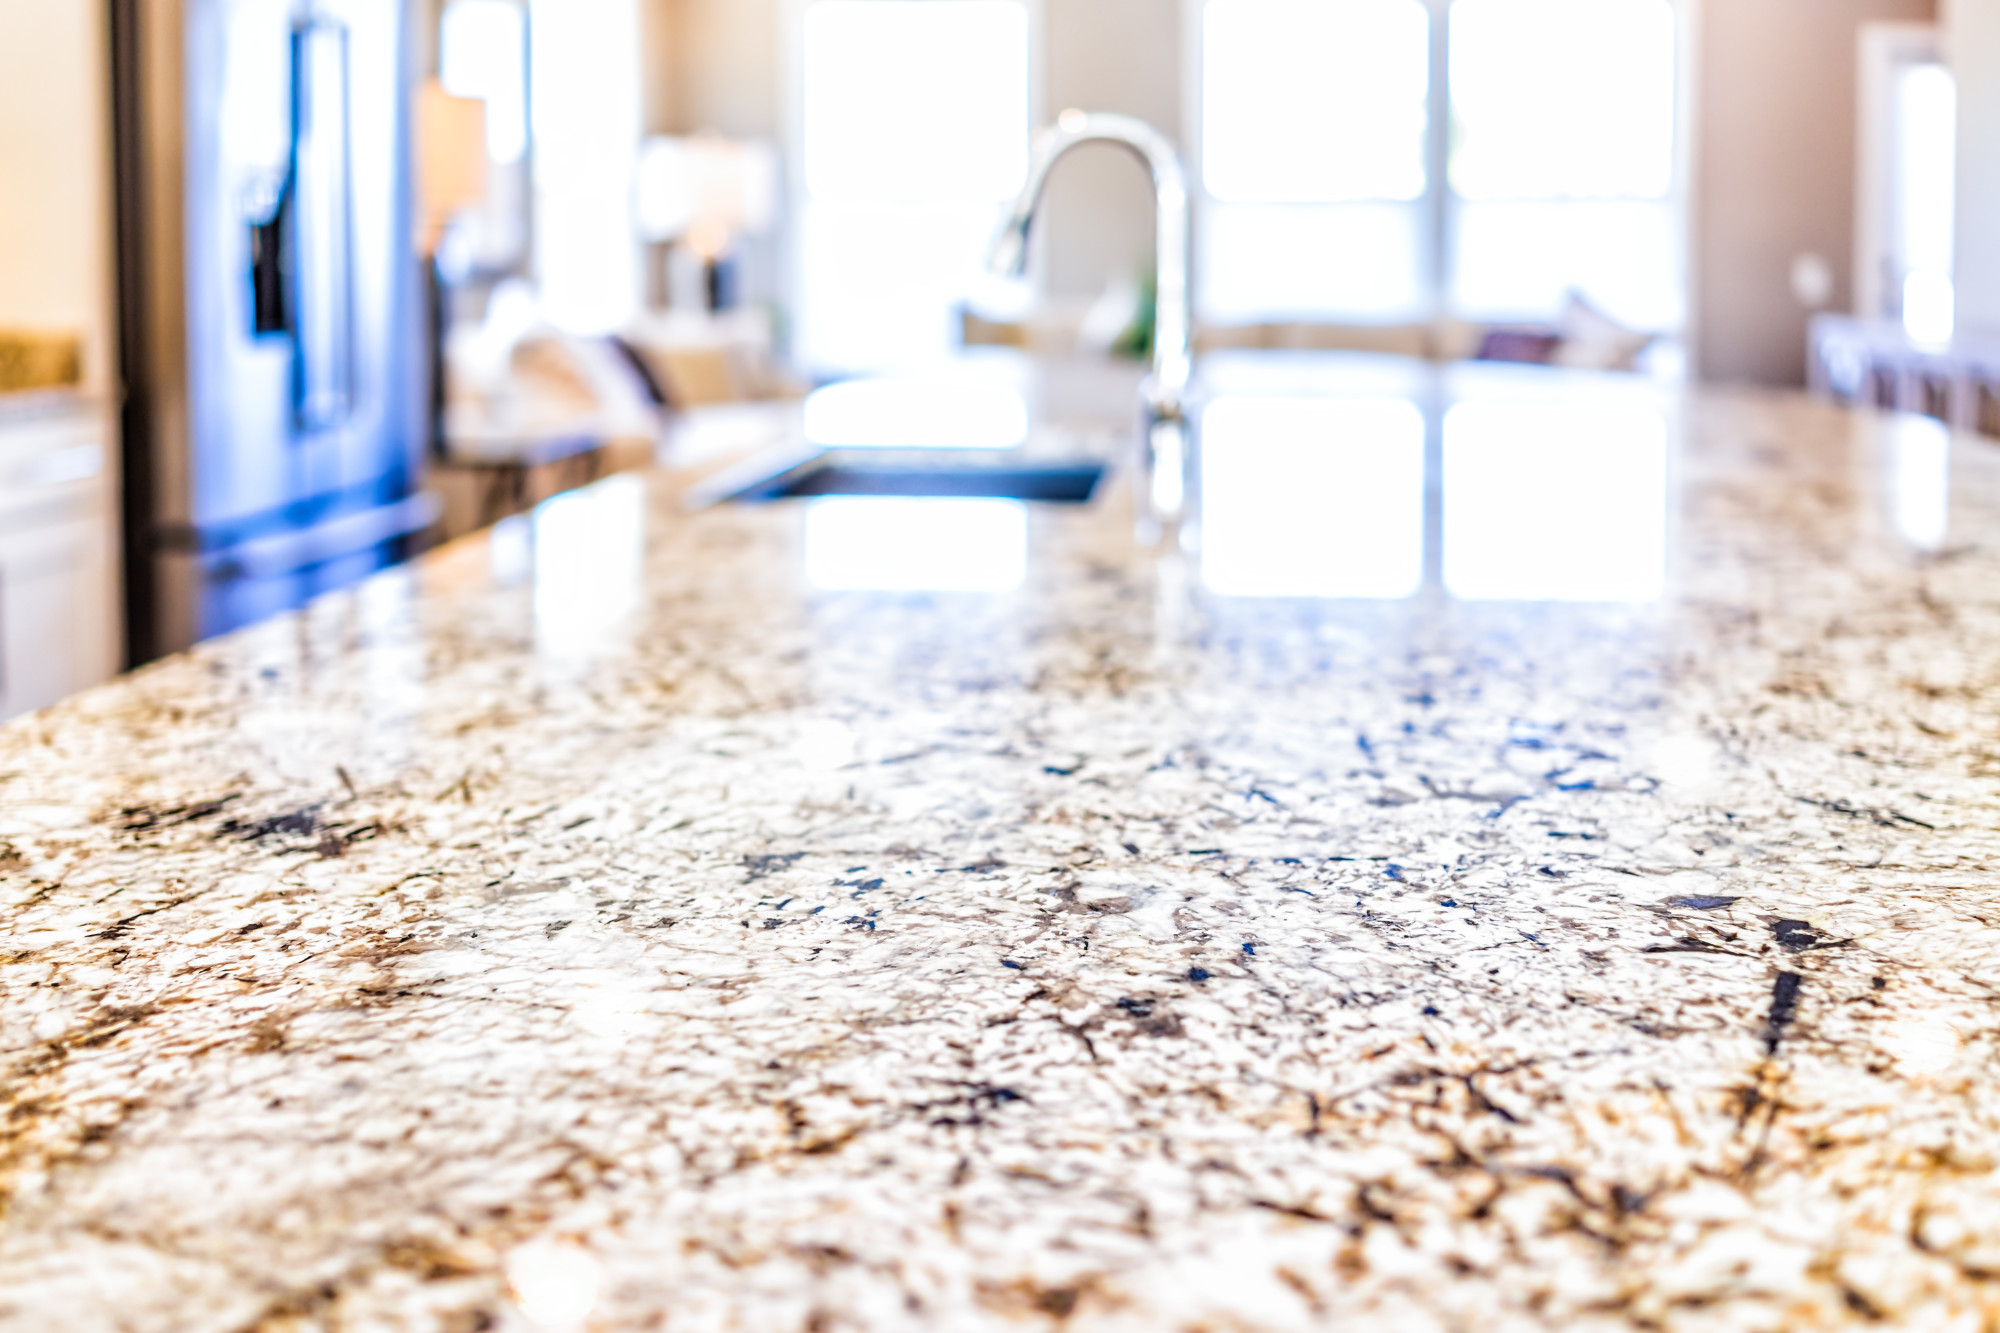 clean granite countertops